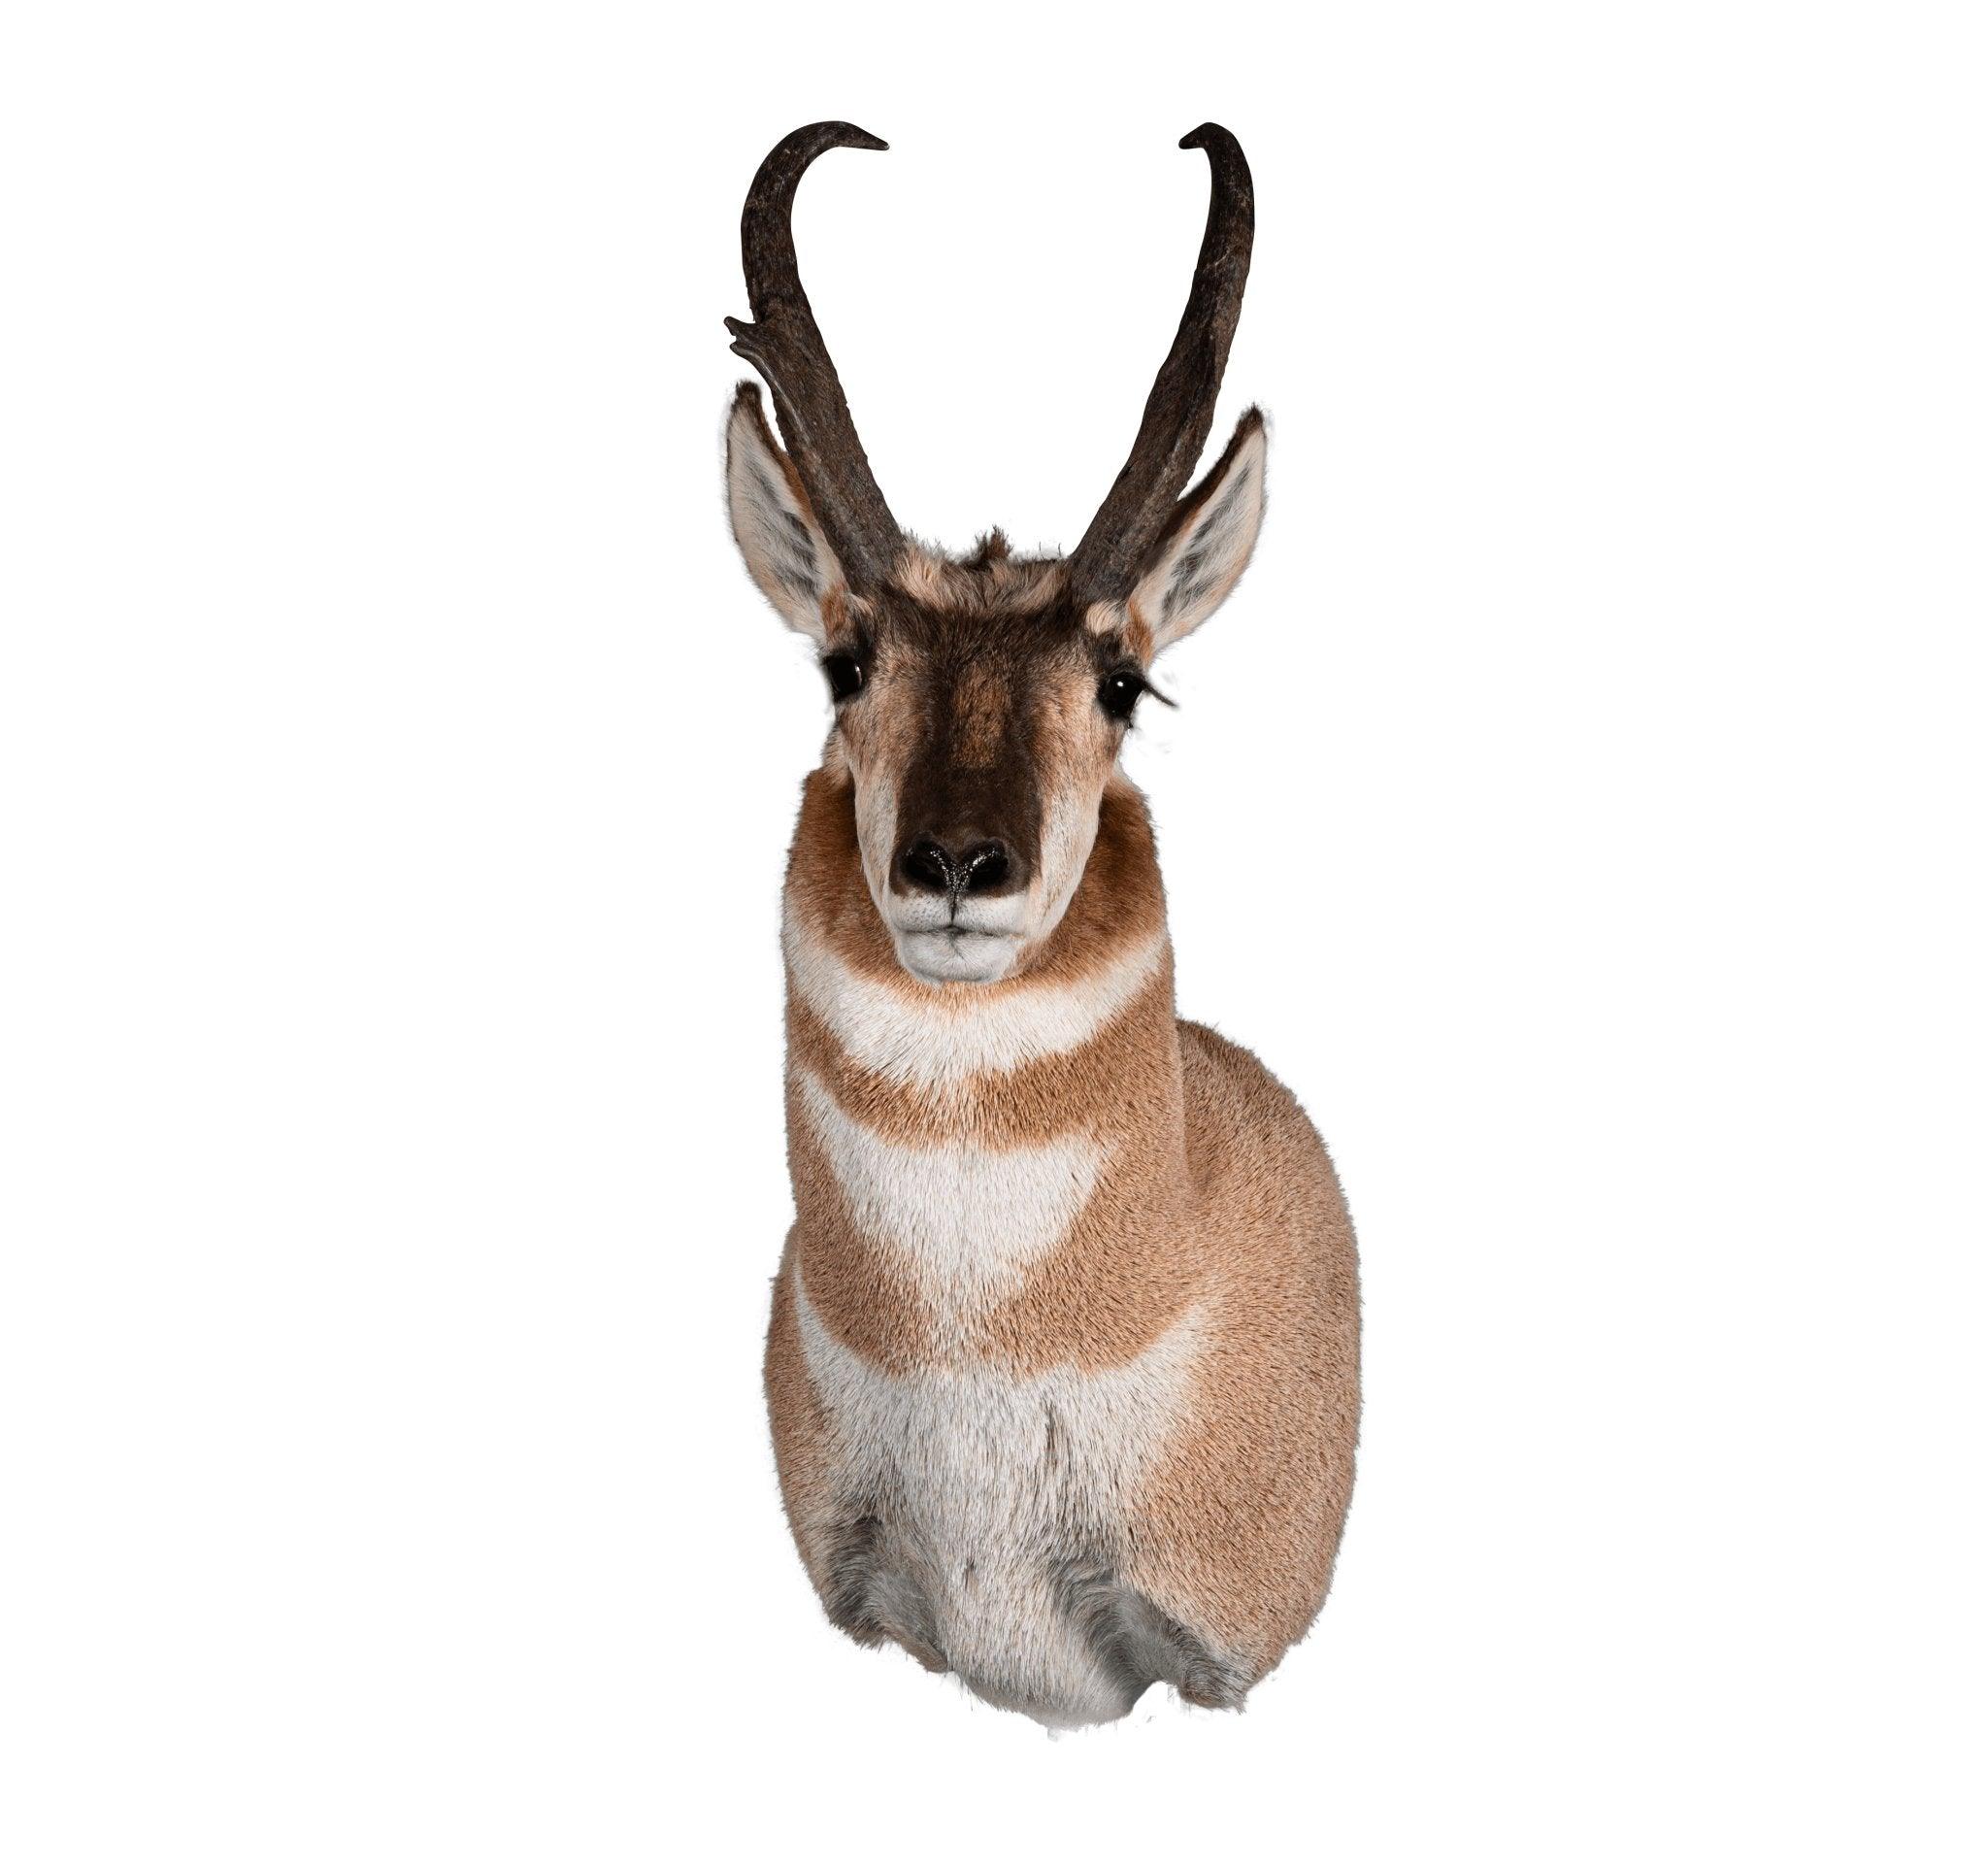 Antelope (Upright) - Matuska Taxidermy Supply Company